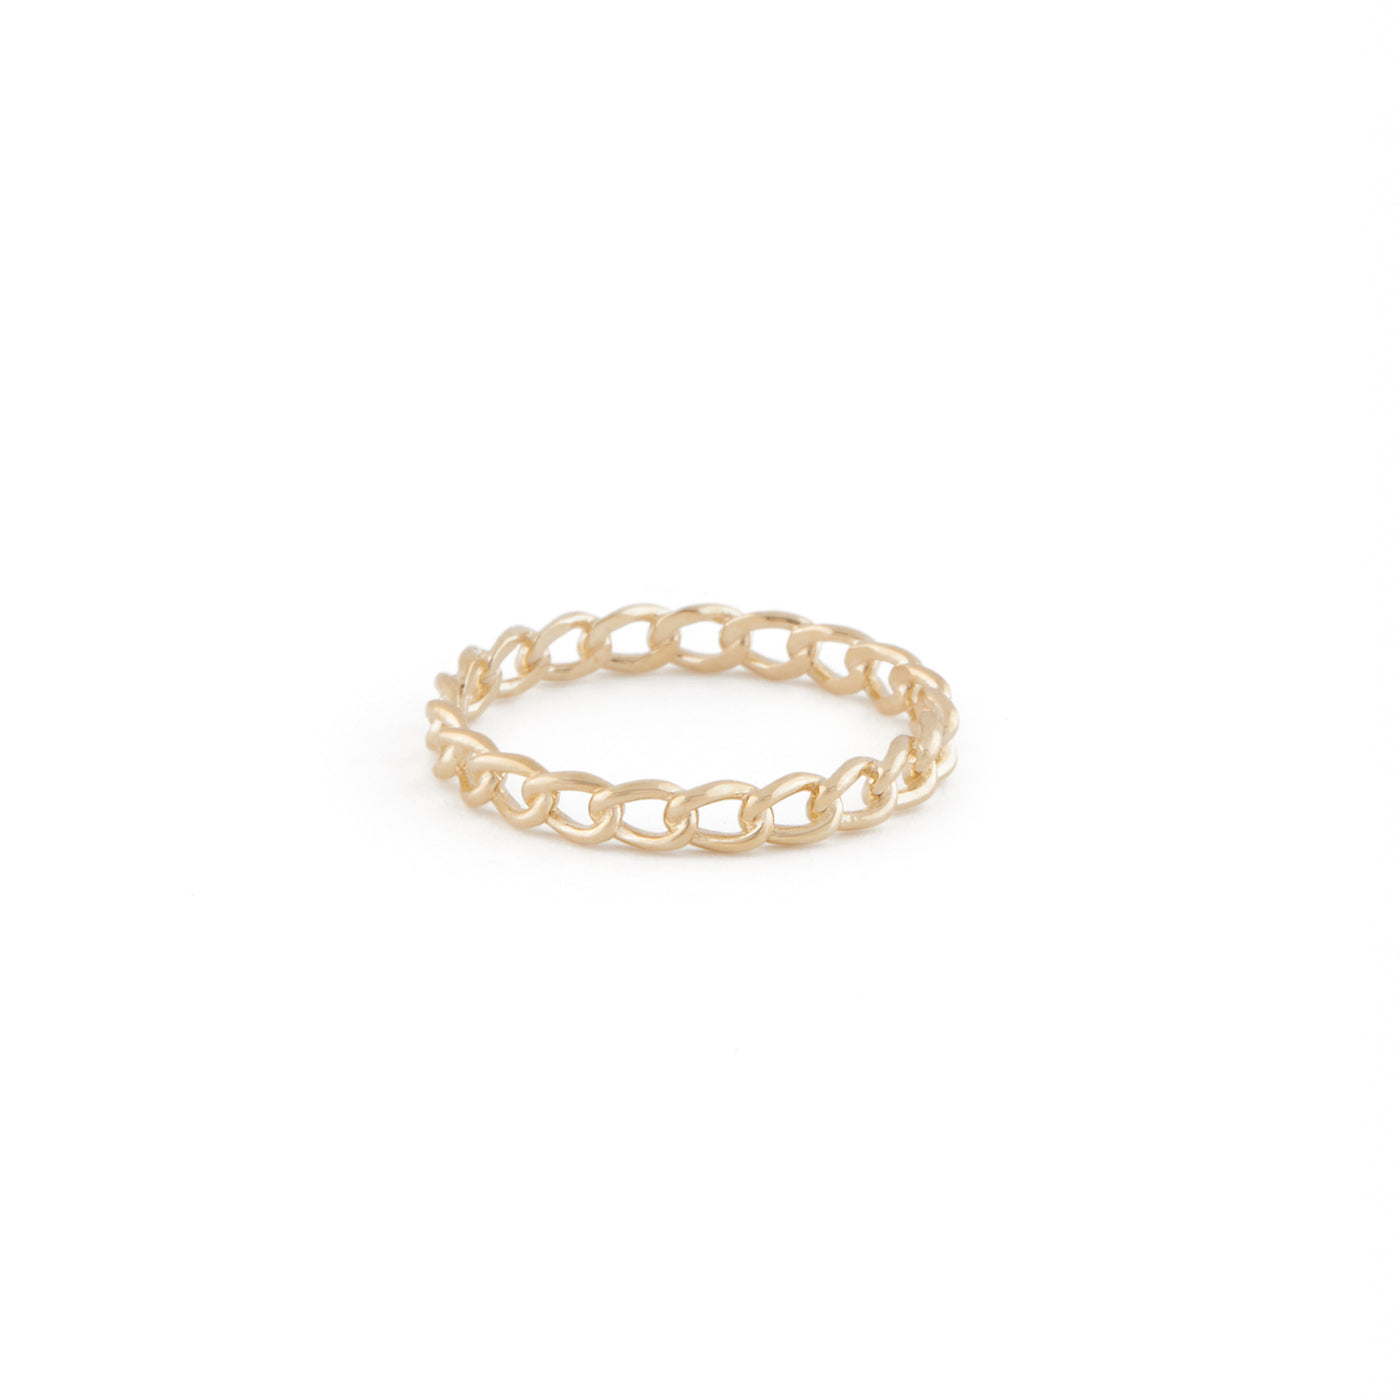 Chain Ring - 10 Karat Gold Chain Ring - 10 Karat Gold